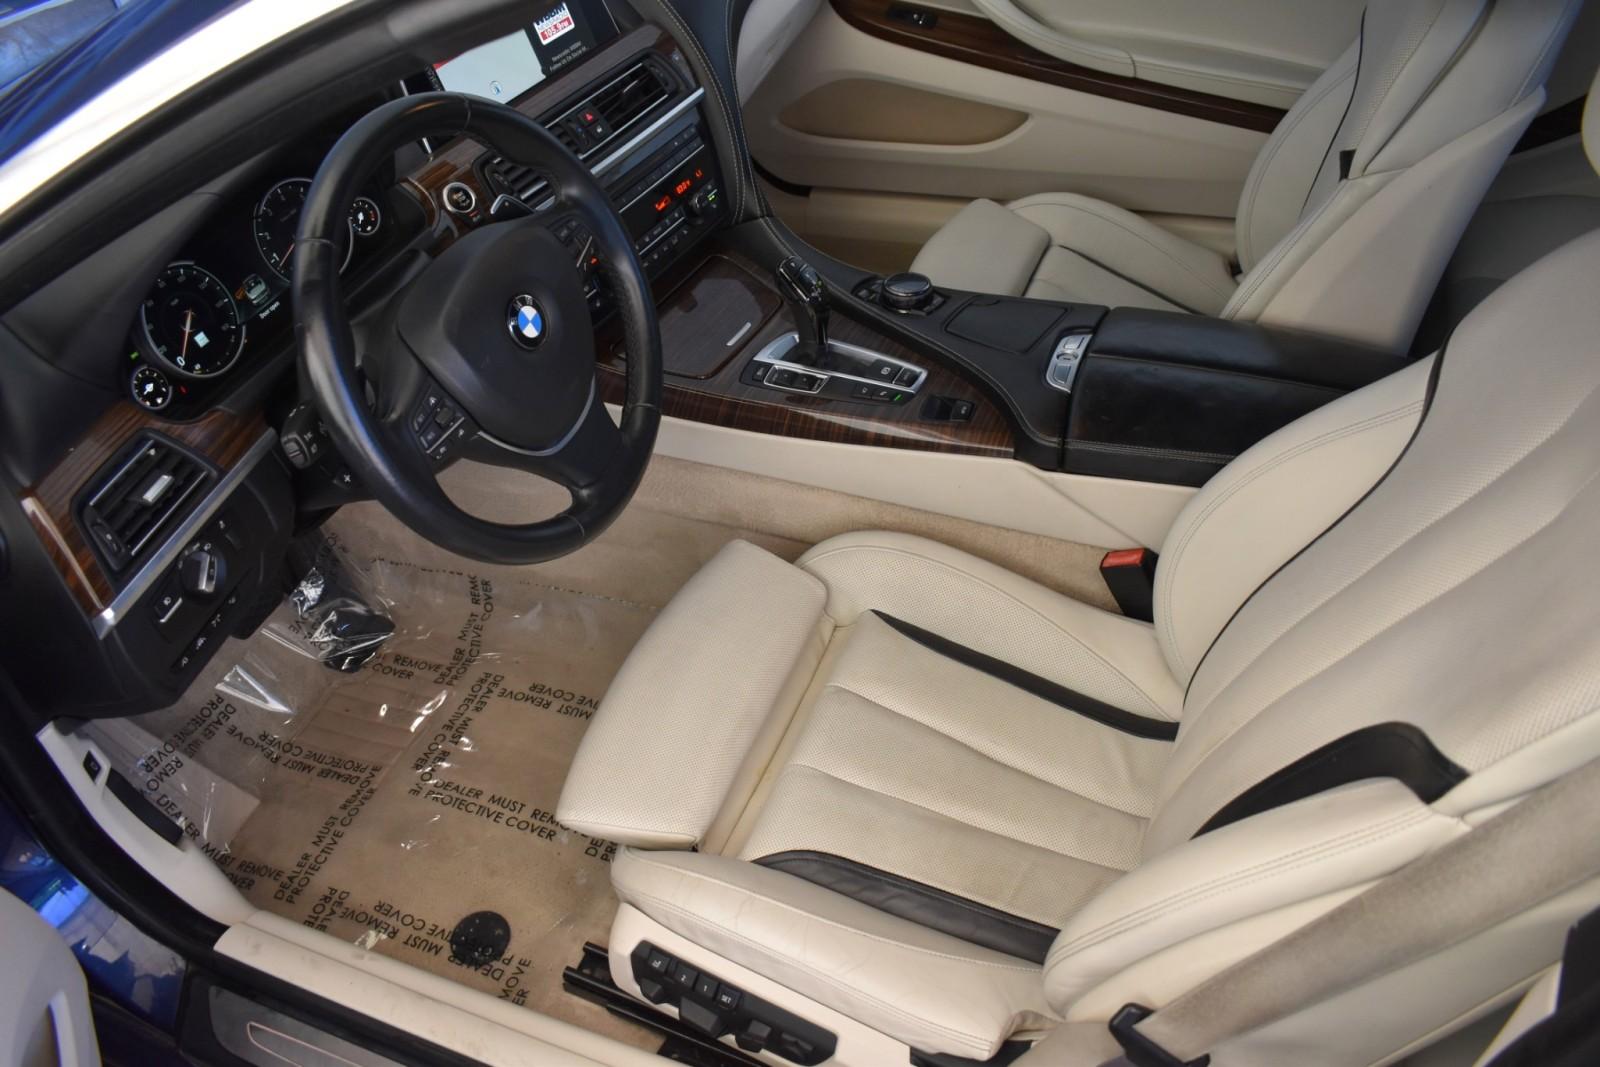 Used 2016 BMW 650i Xdrive GRAND COUPE AWD W/NAV 650i xDrive Gran